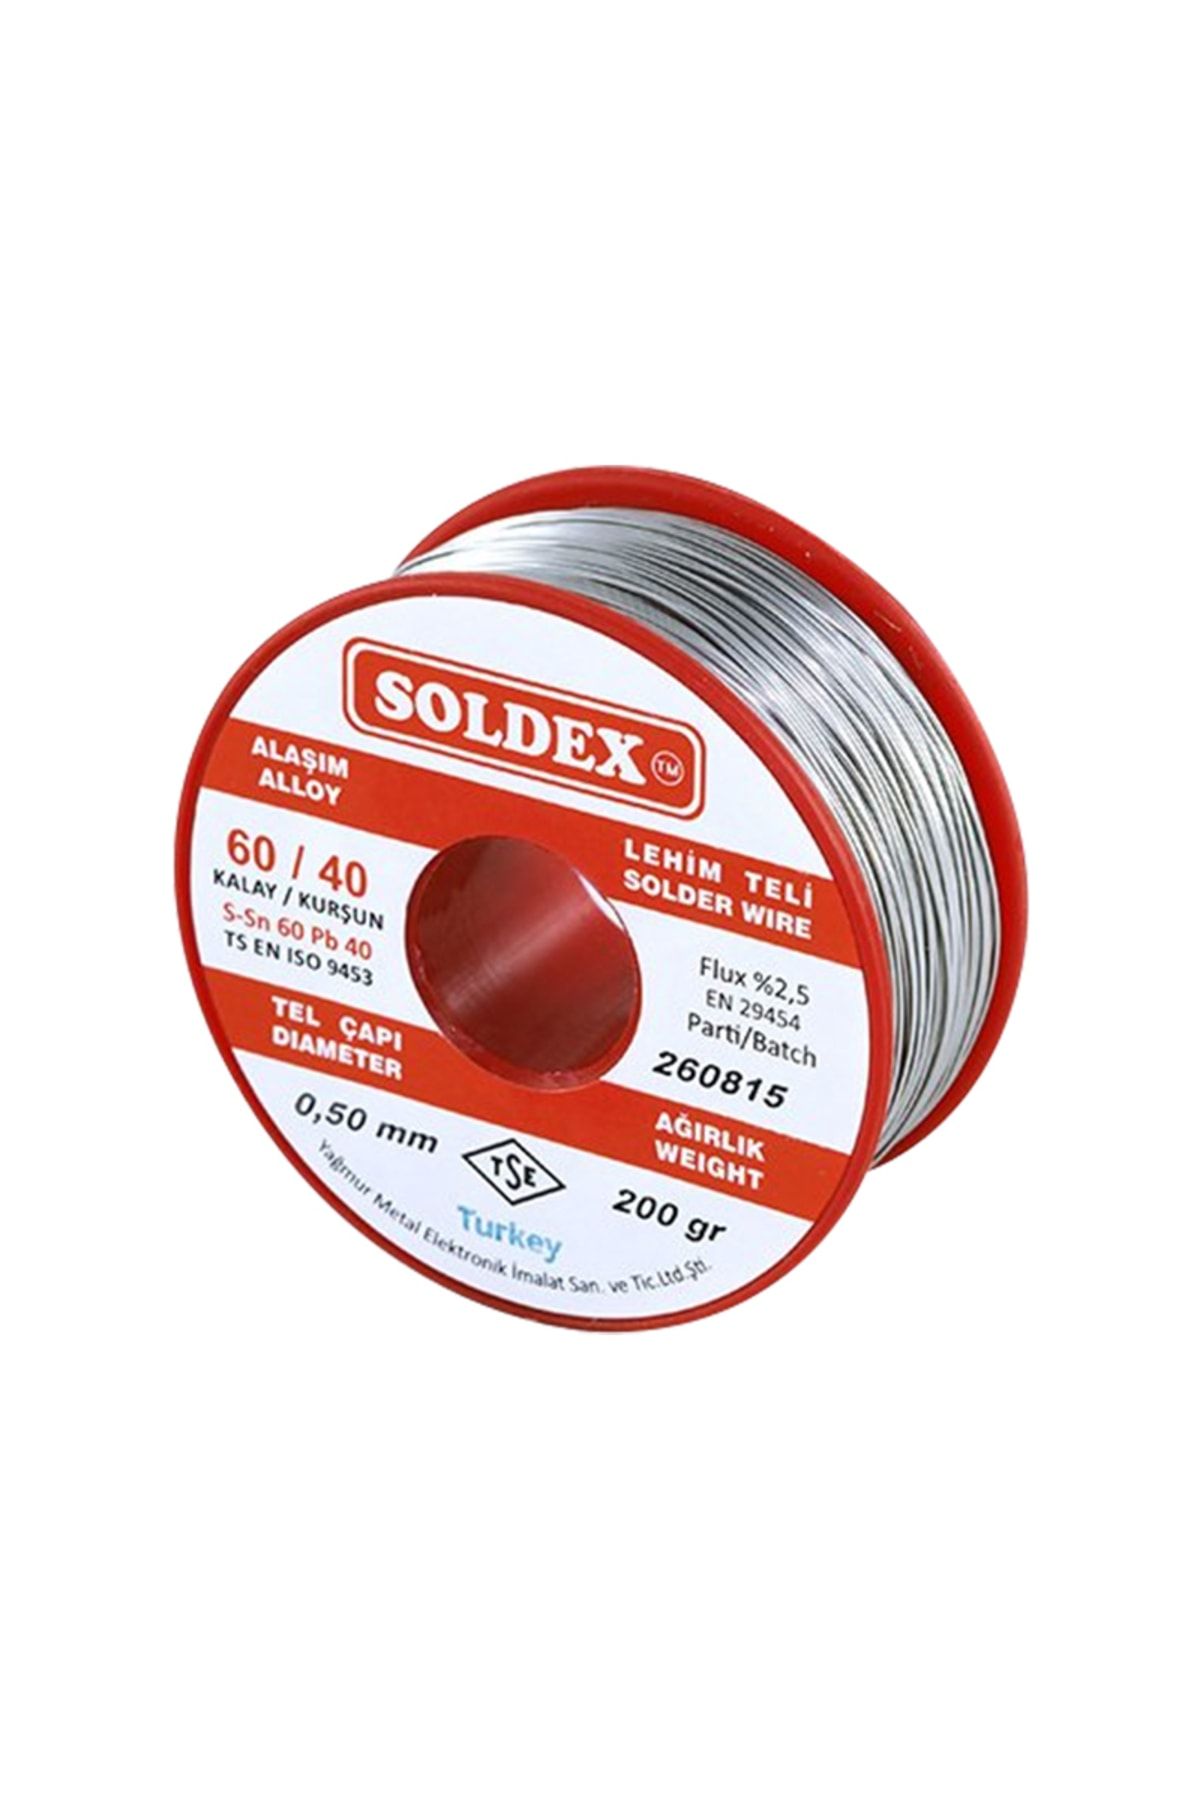 Soldex 60/40 0,50 Mm Lehim Teli 200 gr